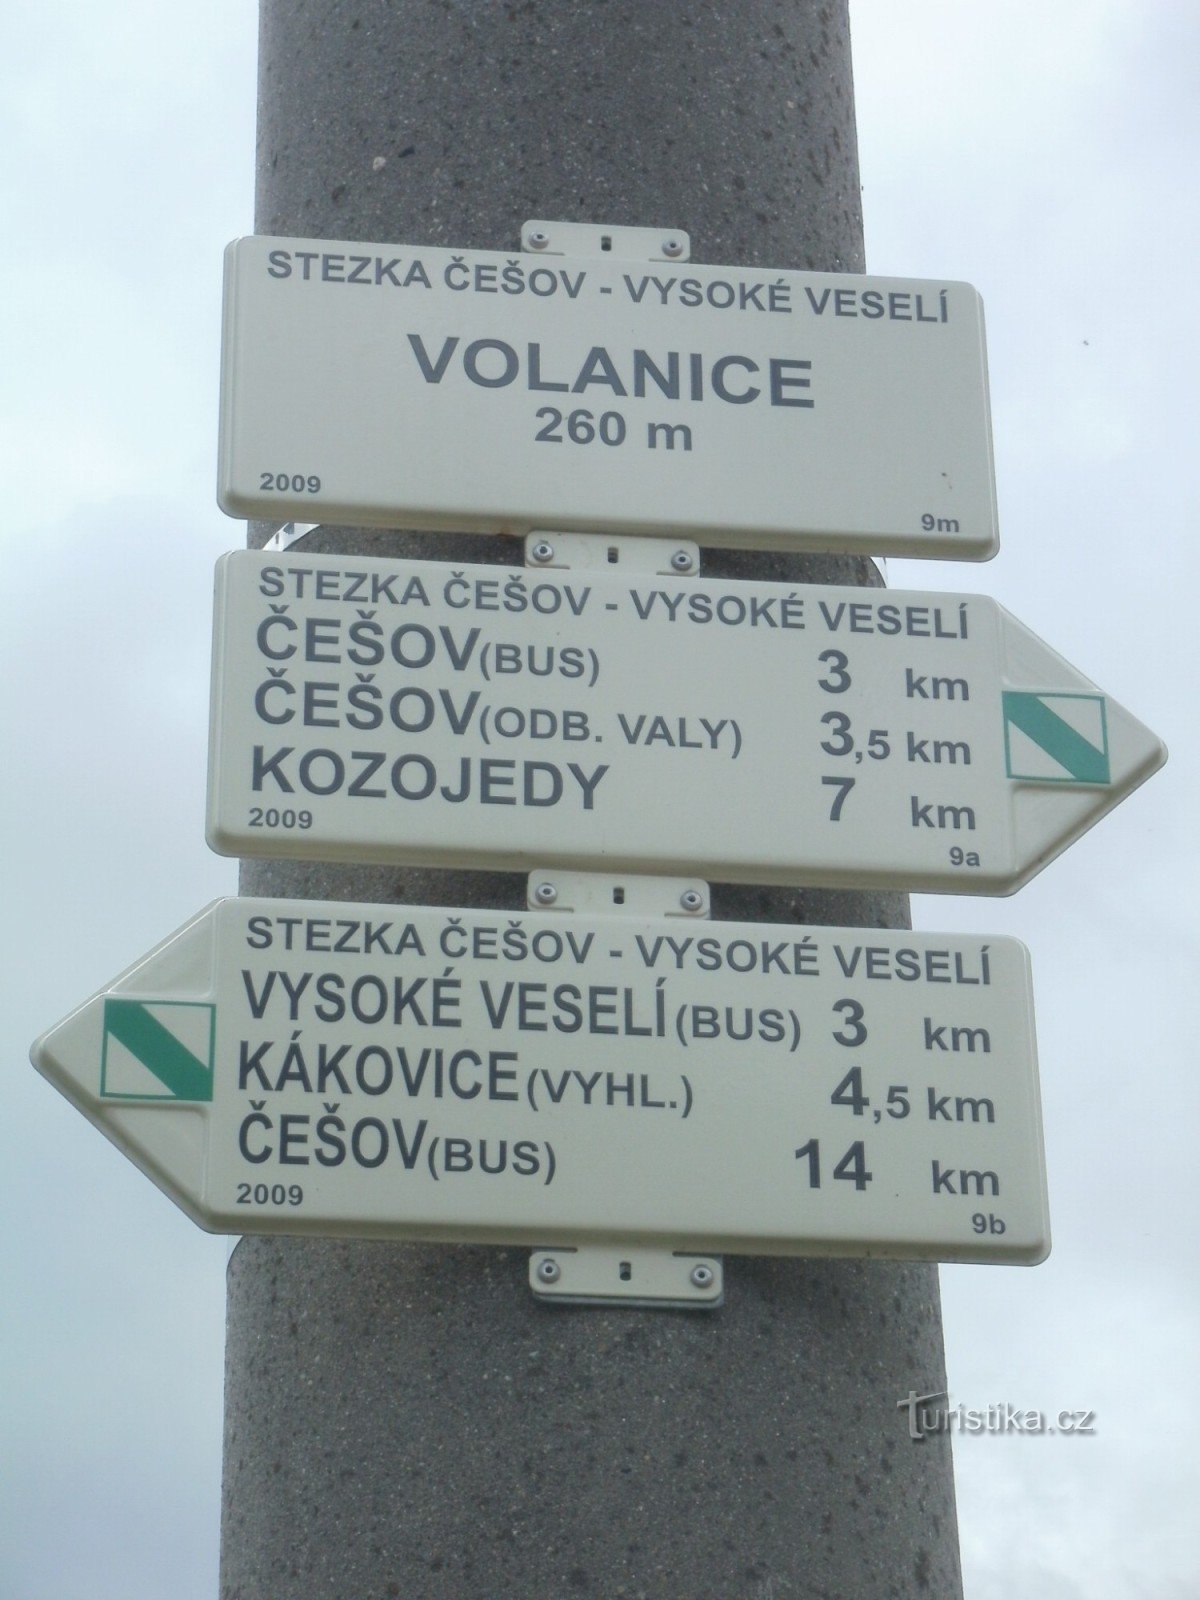 korsningen mellan NS Češov-Vysoké Veselí - Volanice